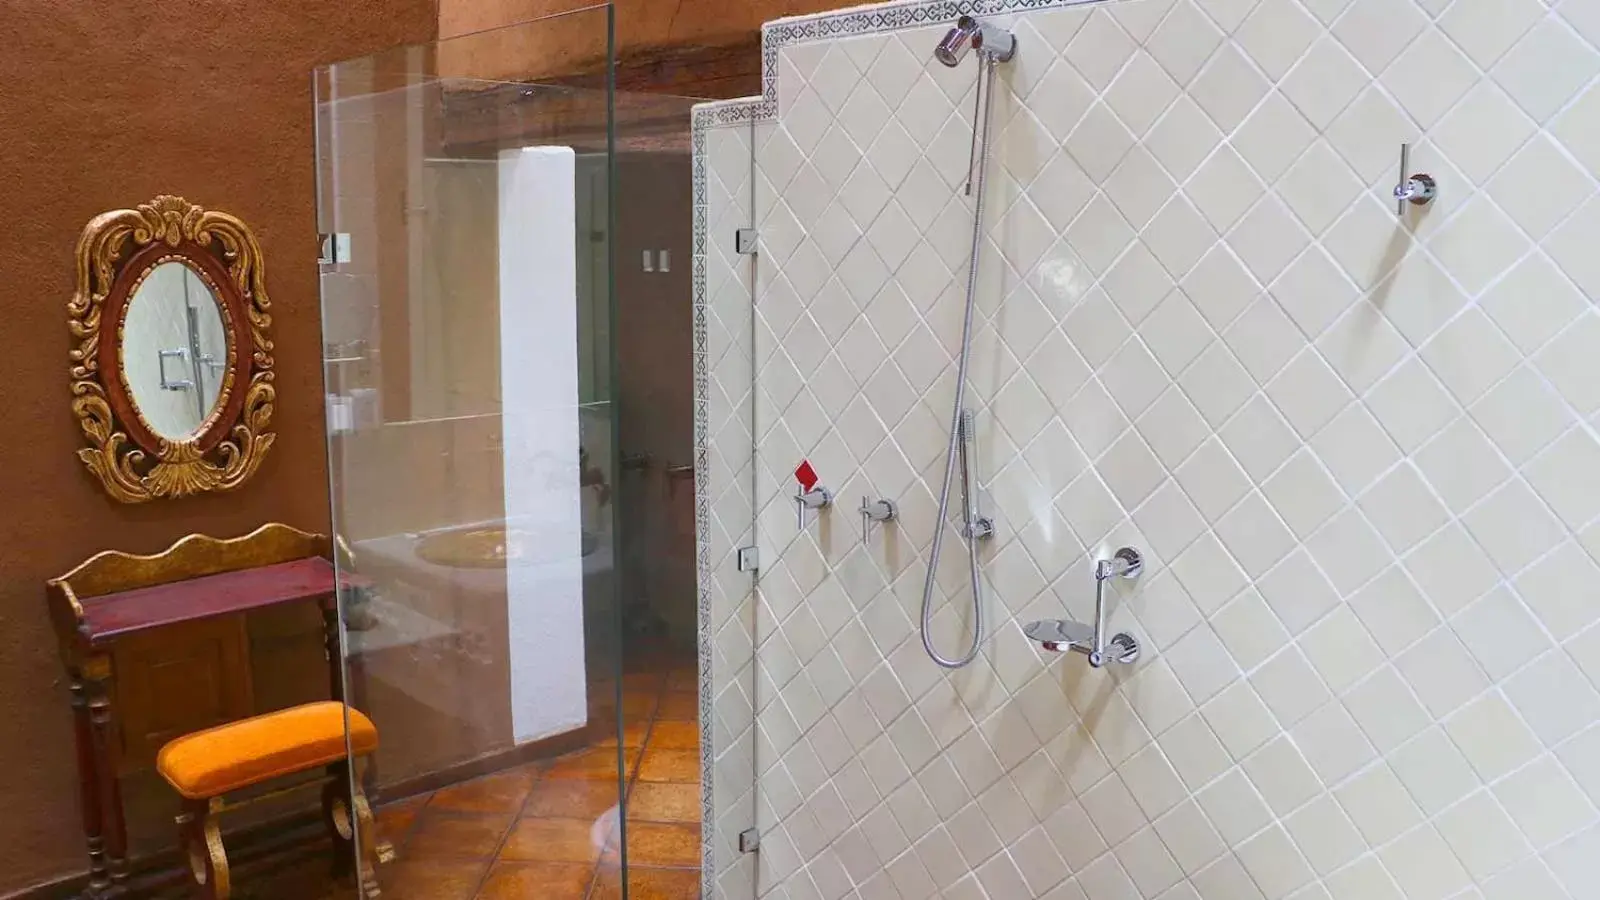 Shower, Bathroom in Hacienda Ucazanaztacua